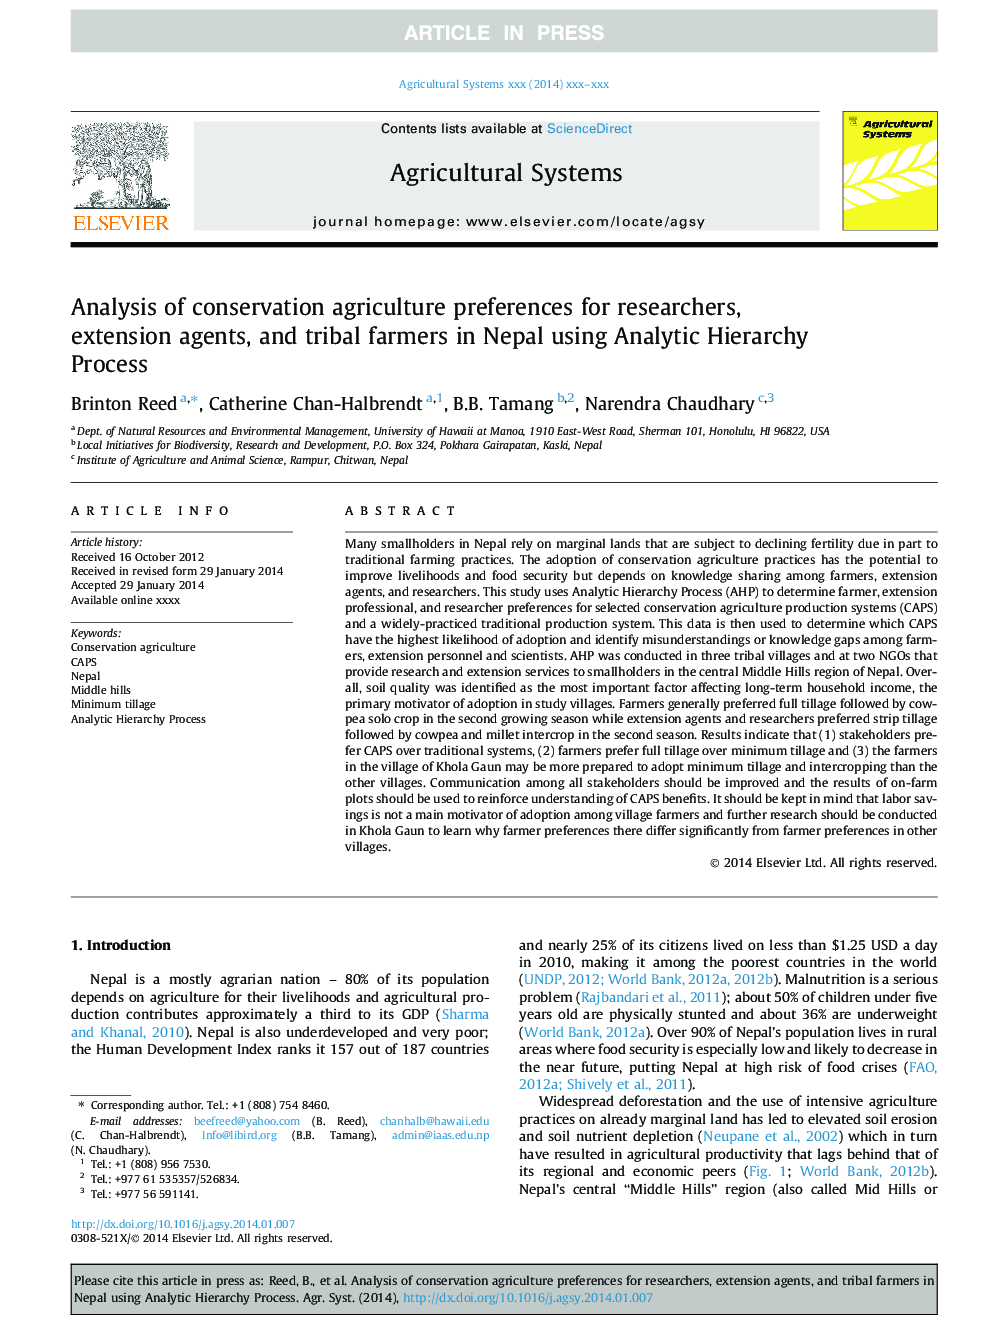 تجزیه و تحلیل ترجیحات کشاورزی حفاظت برای محققان، عوامل توسعه و کشاورزان قبیله ای در نپال با استفاده از روند سلسله مراتبی تحلیلی 